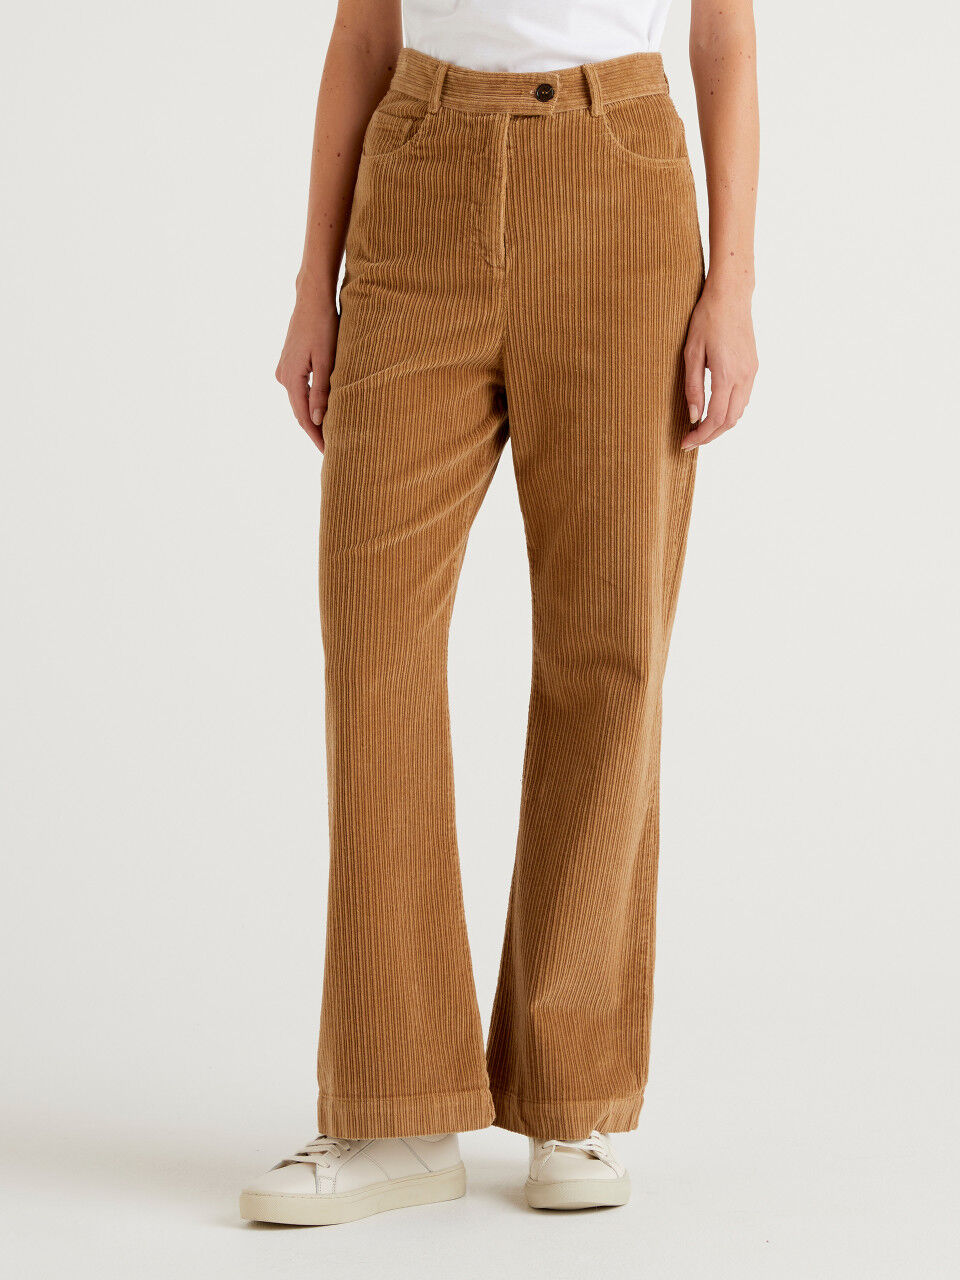 Women Brown Trousers - Buy Women Brown Trousers online in India